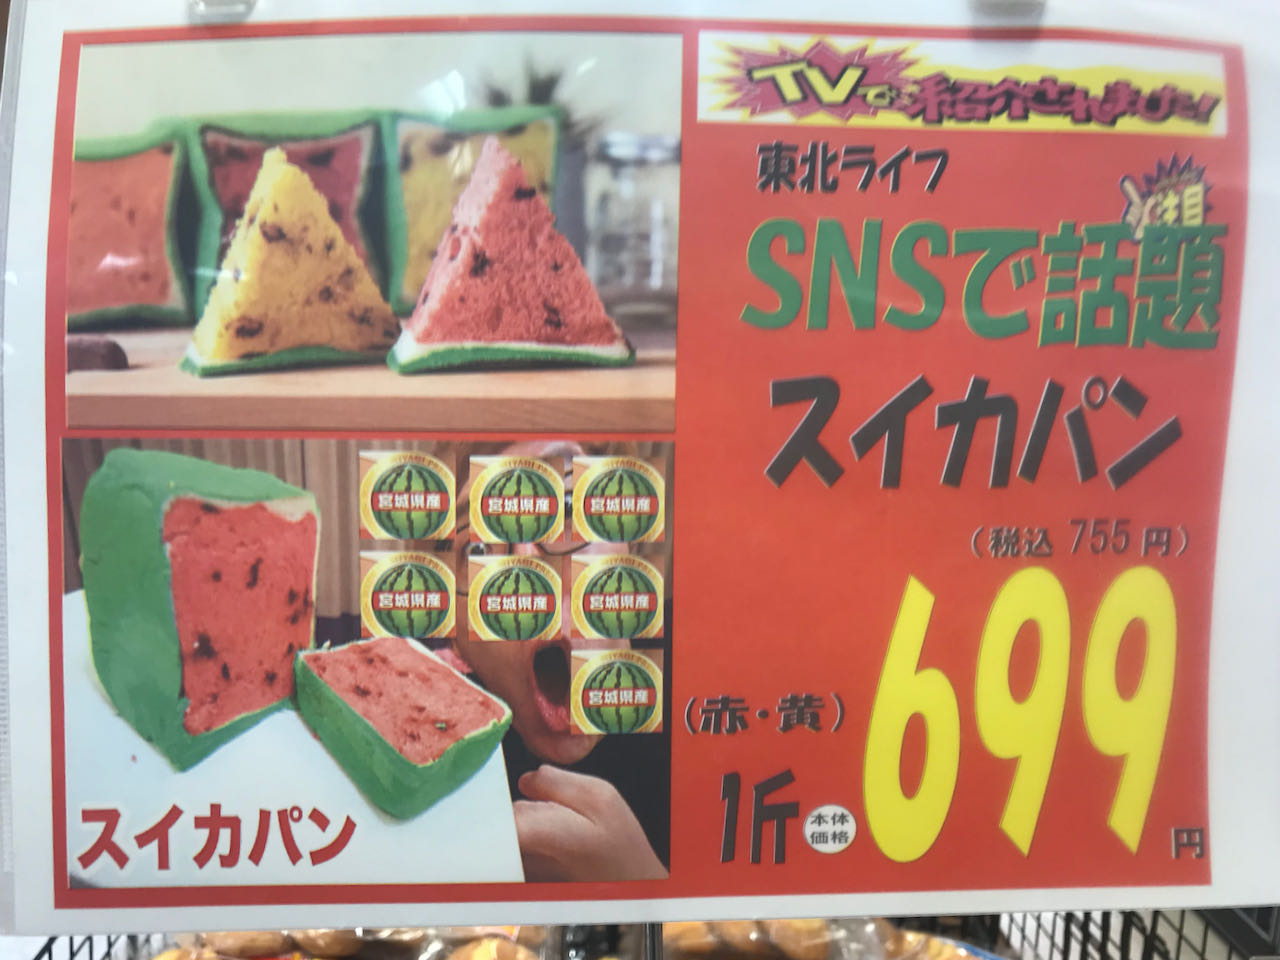 スイカパン699円